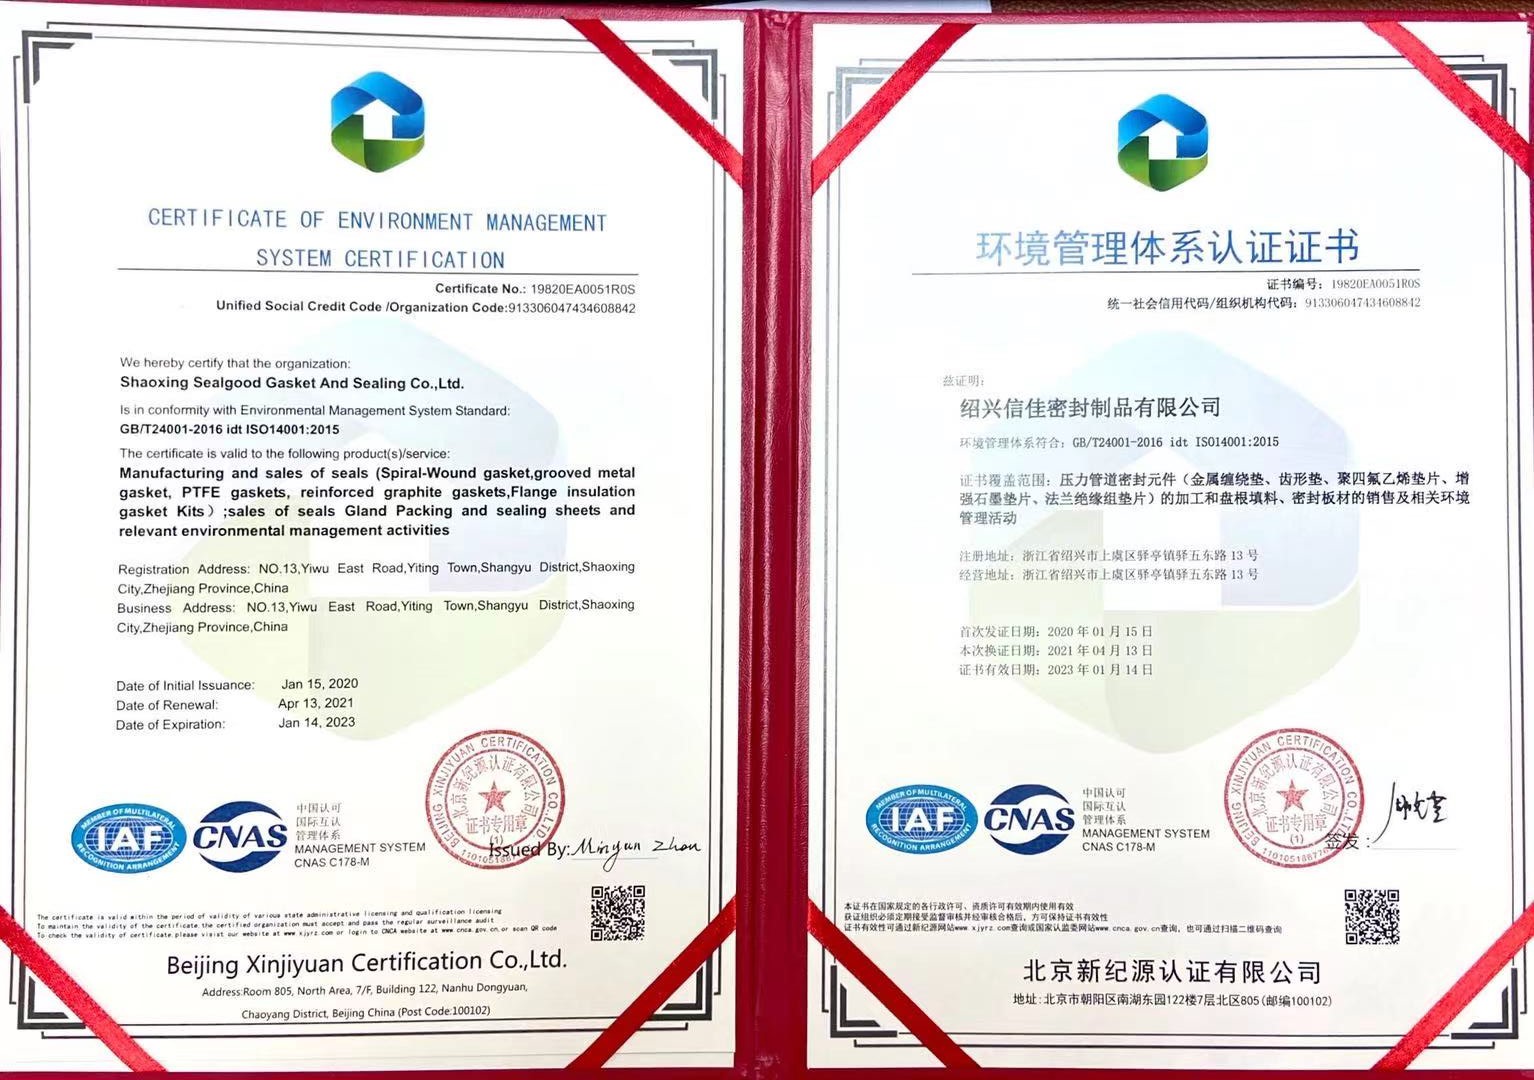 Shaoxing Sealgood gasket and sealing Co., Ltd. obtuvo una nueva certificación